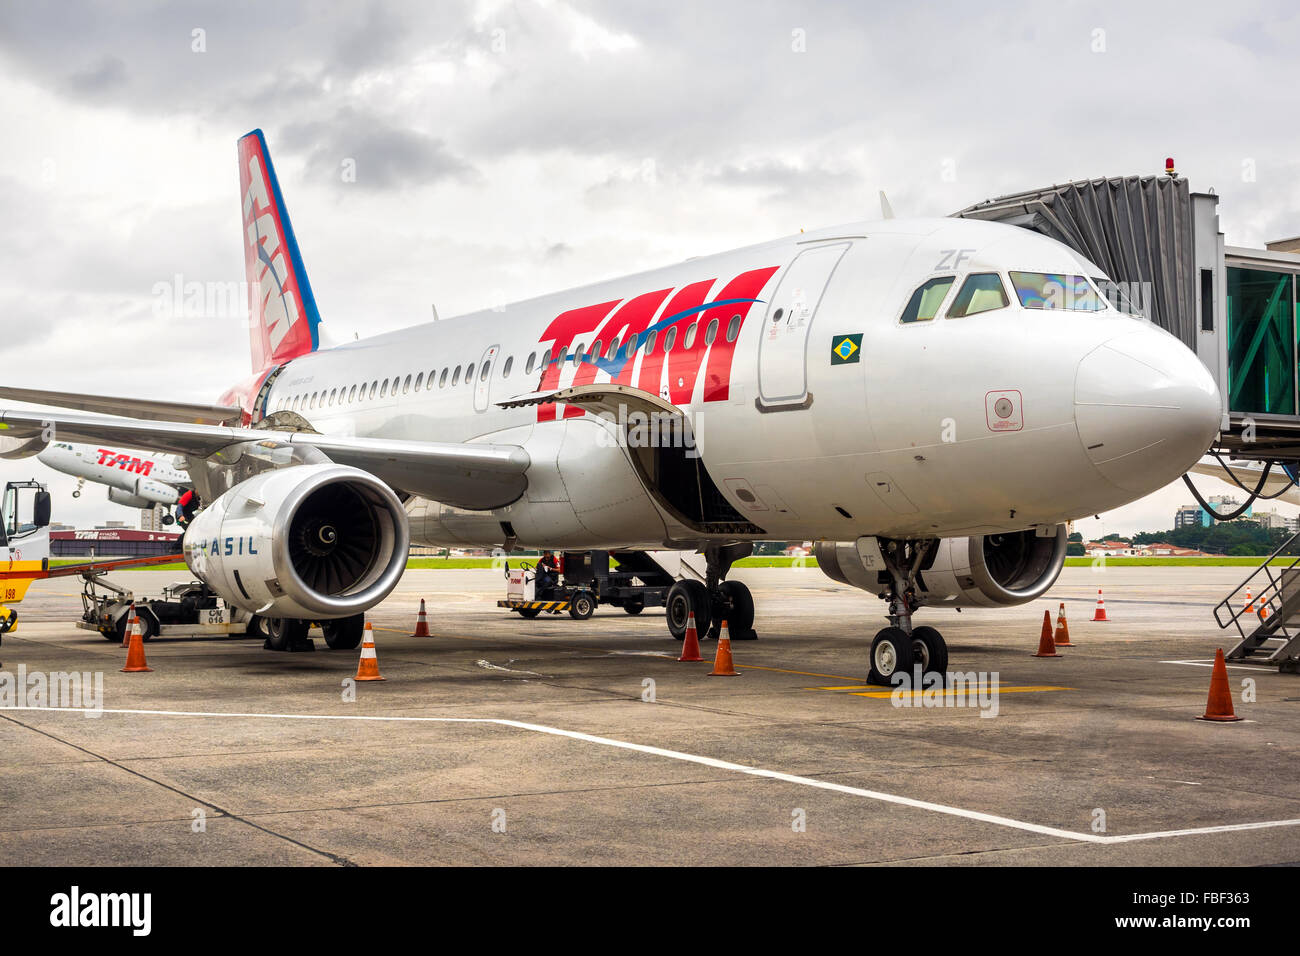 TAM Airlines Airbus 320 garée à l'aéroport de Guarulhos à Sao Paulo, Brésil. TAM est la marque brésilienne de Latam Airlines. Banque D'Images